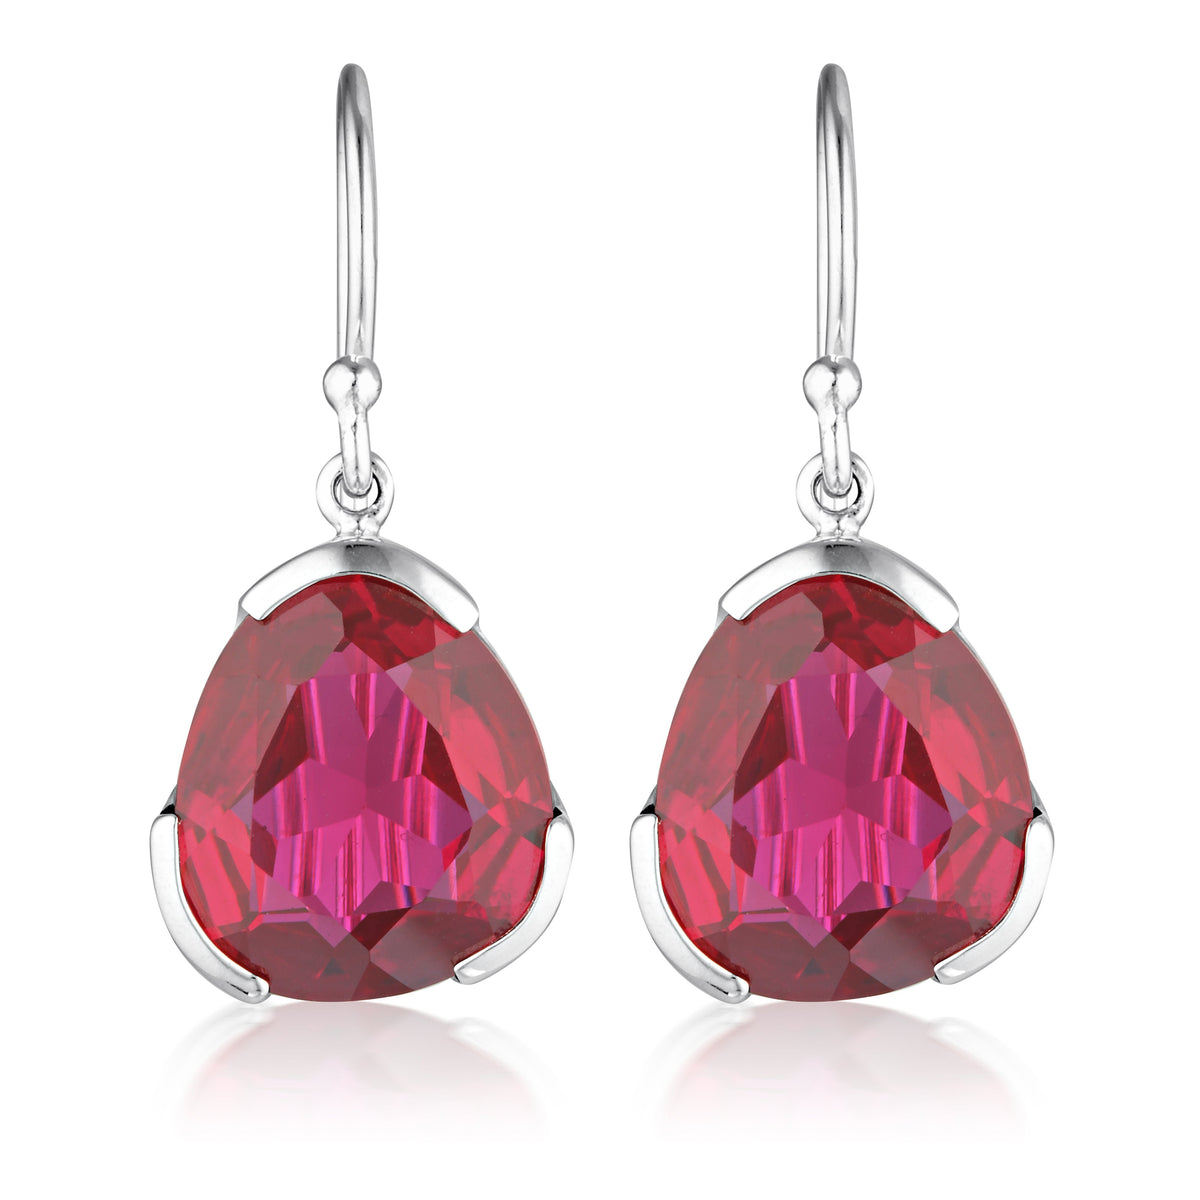 Everyday Gemstone Earrings - Ruby Red Corundum